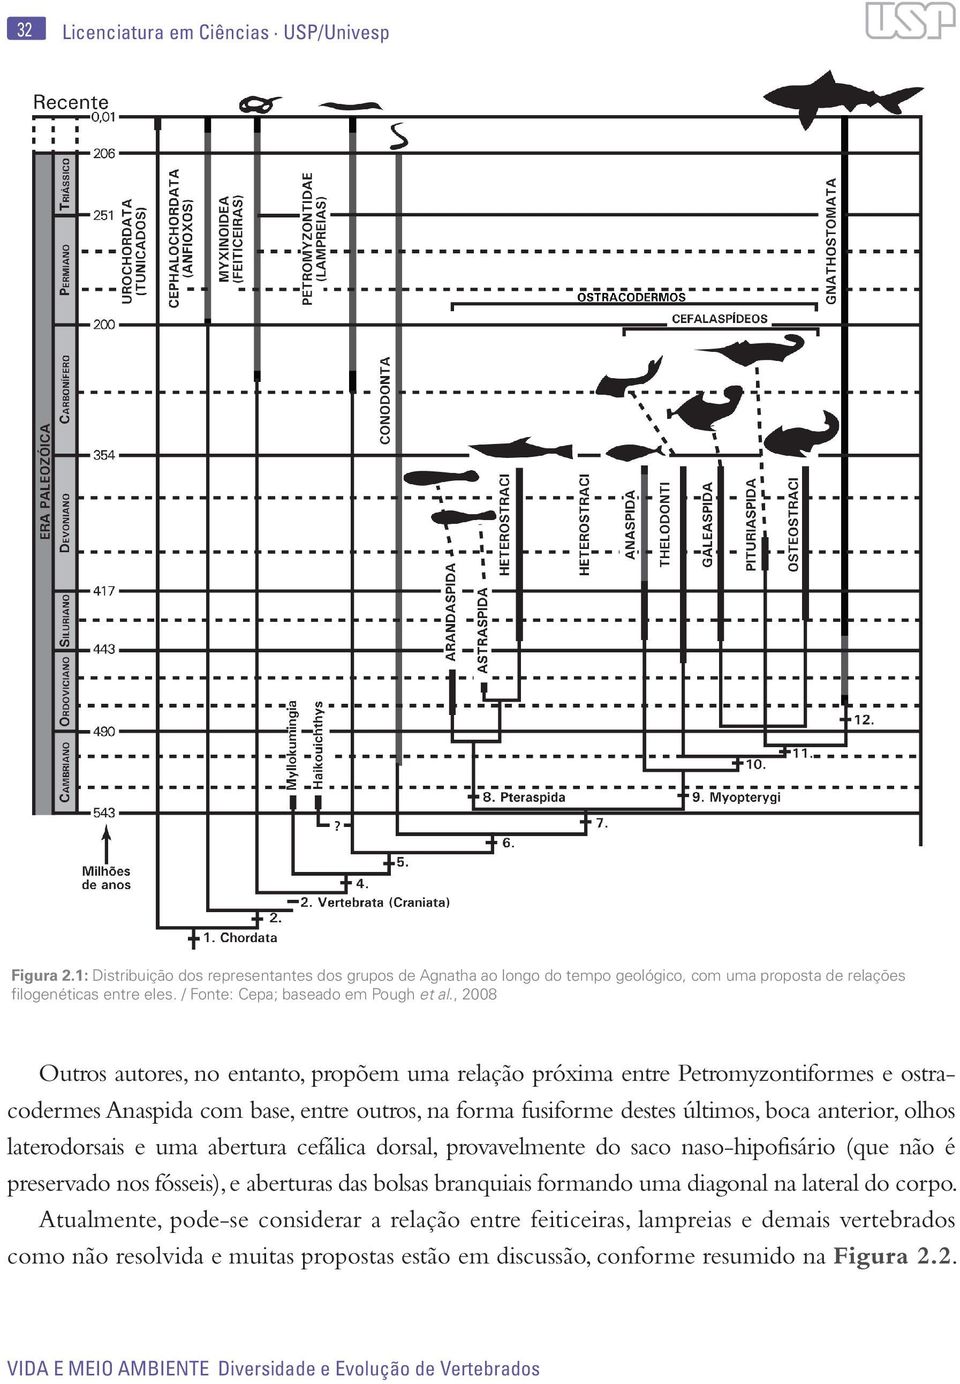 , 2008 Outros autores, no entanto, propõem uma relação próxima entre Petromyzontiformes e ostracodermes Anaspida com base, entre outros, na forma fusiforme destes últimos, boca anterior, olhos